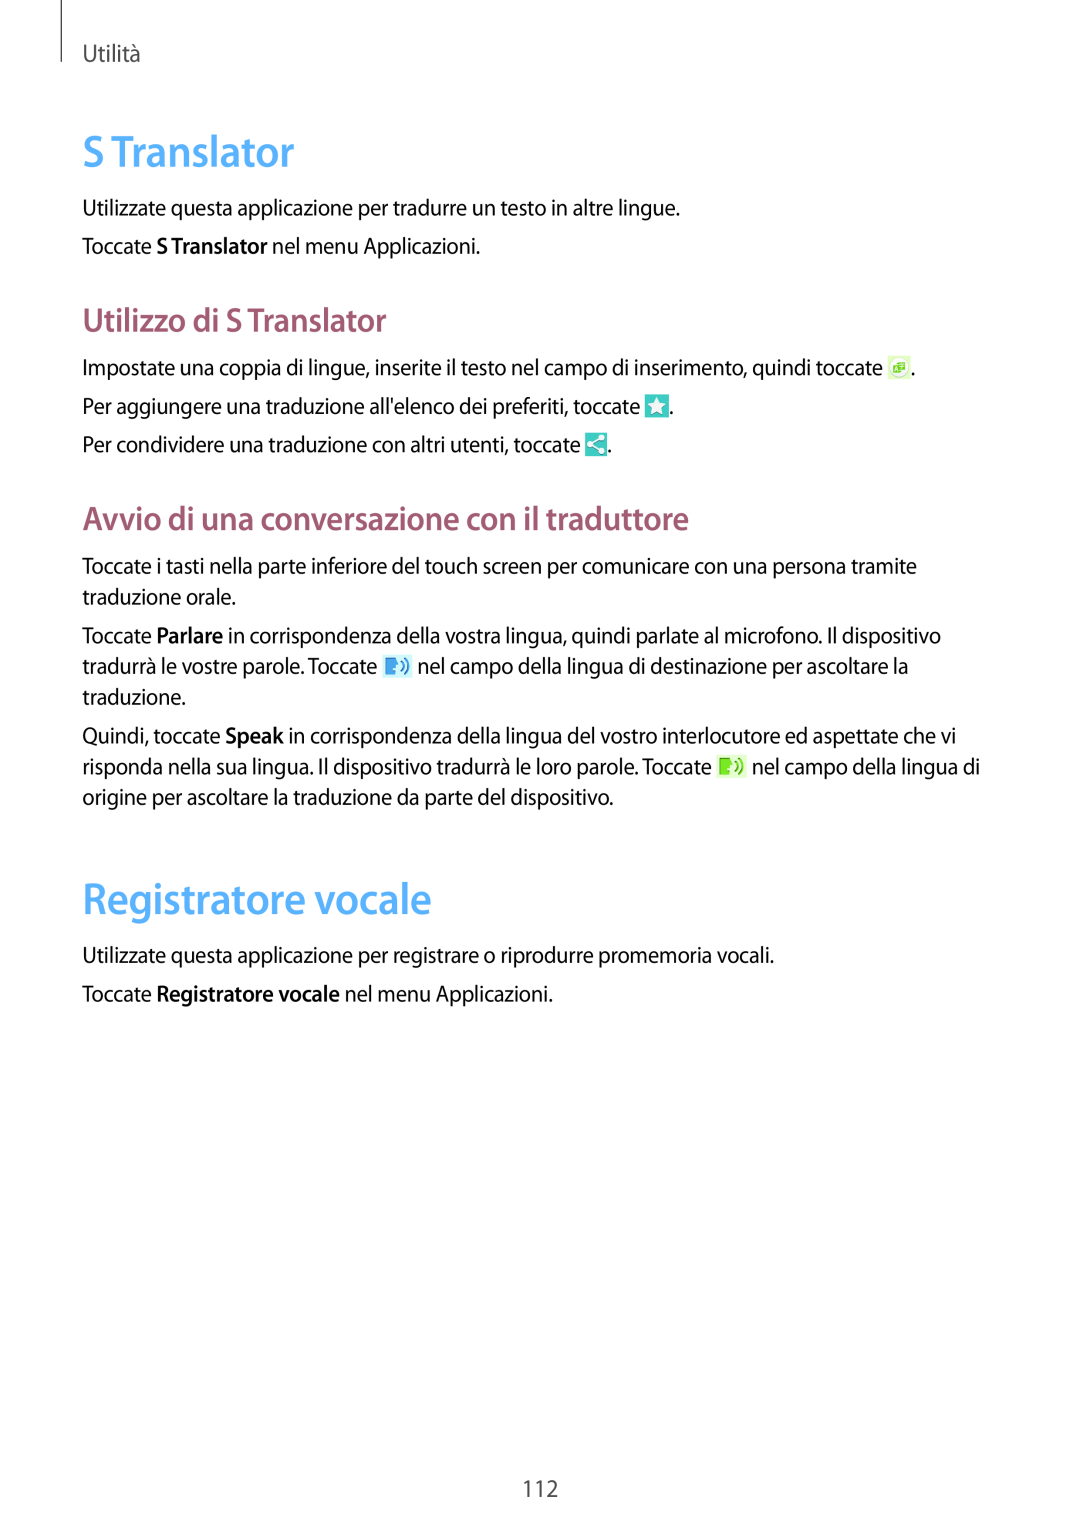 Samsung GT-I9515DKYPHN Registratore vocale, Utilizzo di S Translator, Avvio di una conversazione con il traduttore 